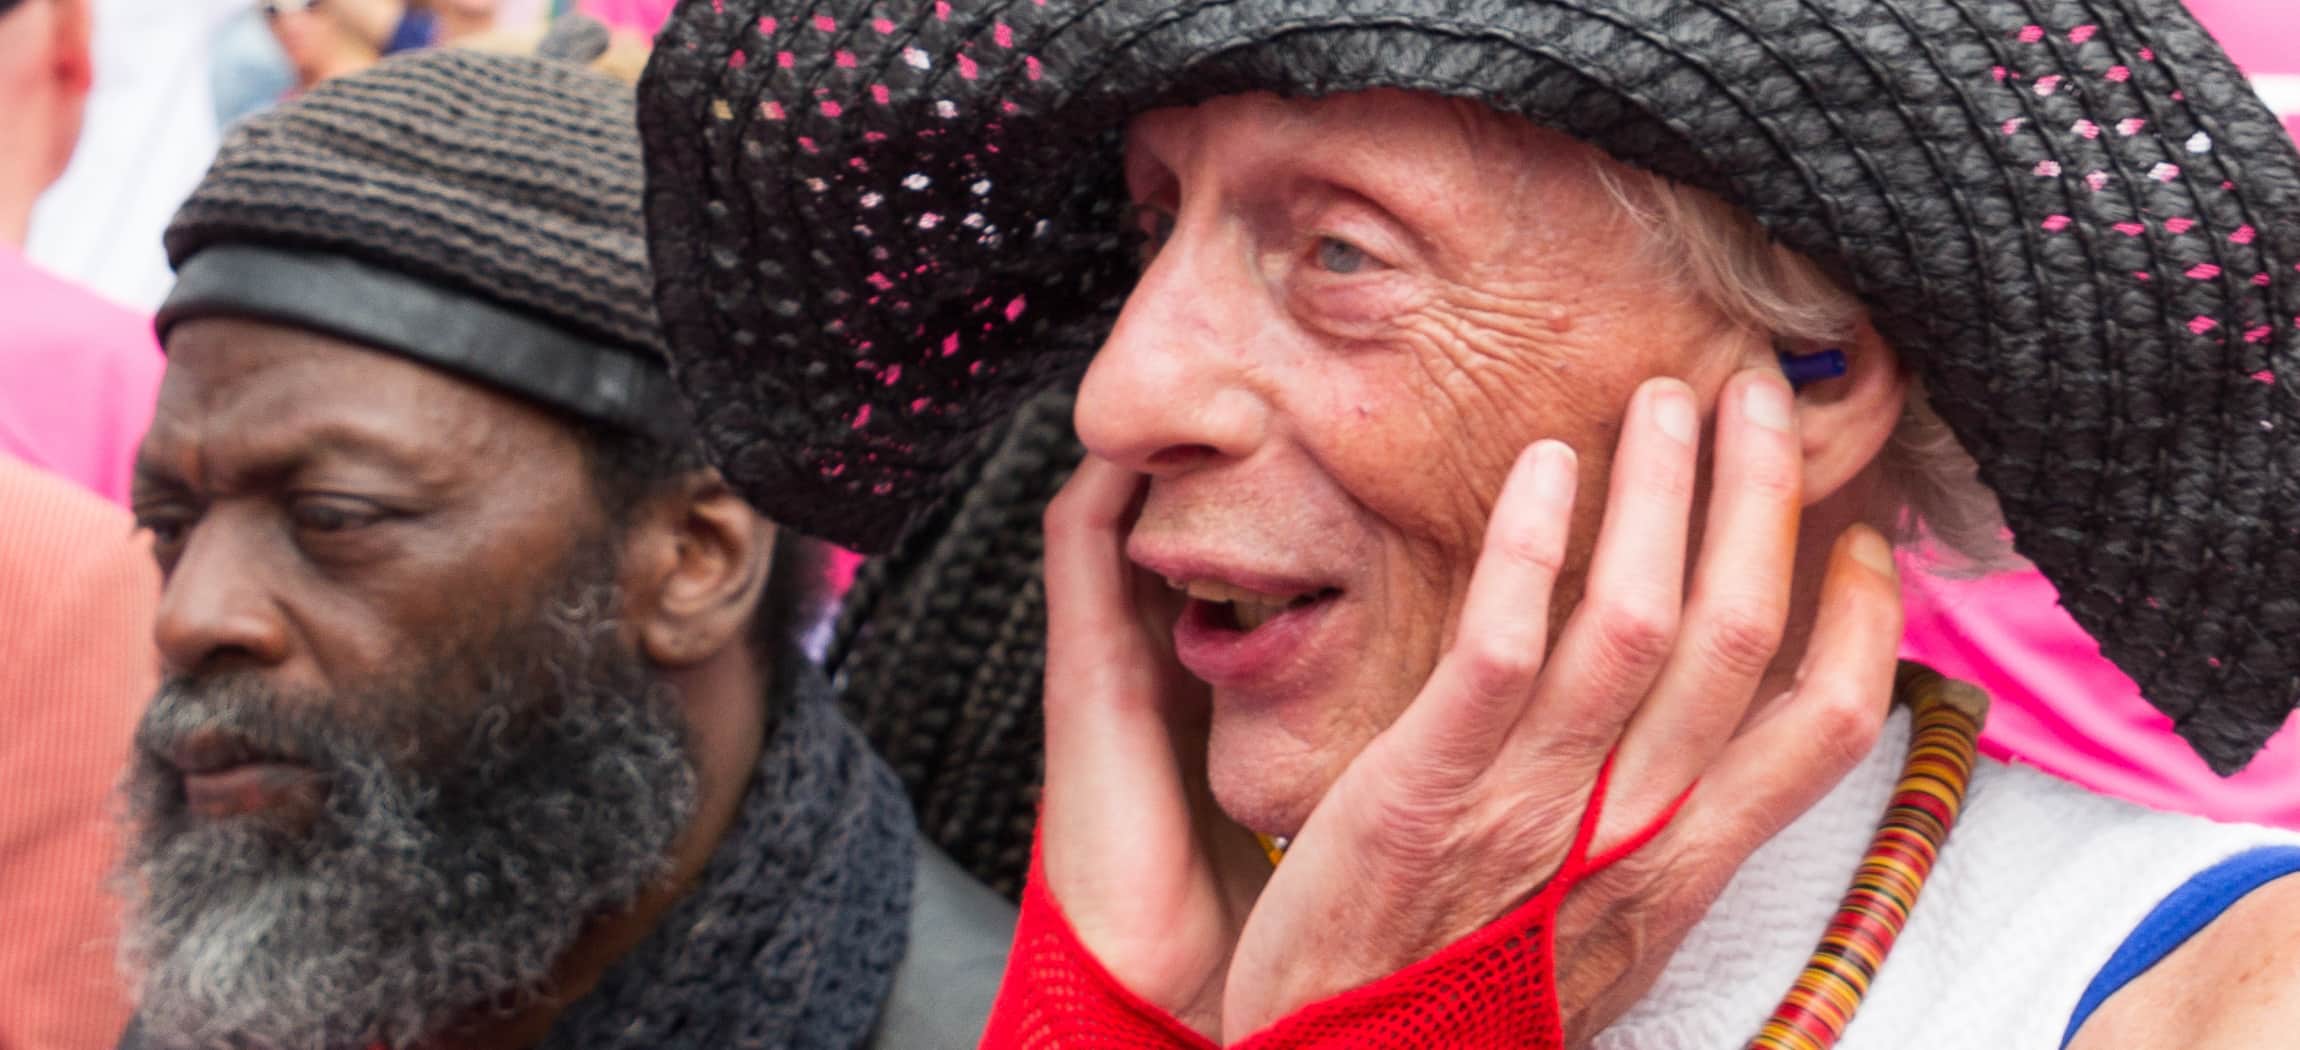 Tijdens Canal Pride kijkt oudere man blij en enthousiast met zwarte flaphoed